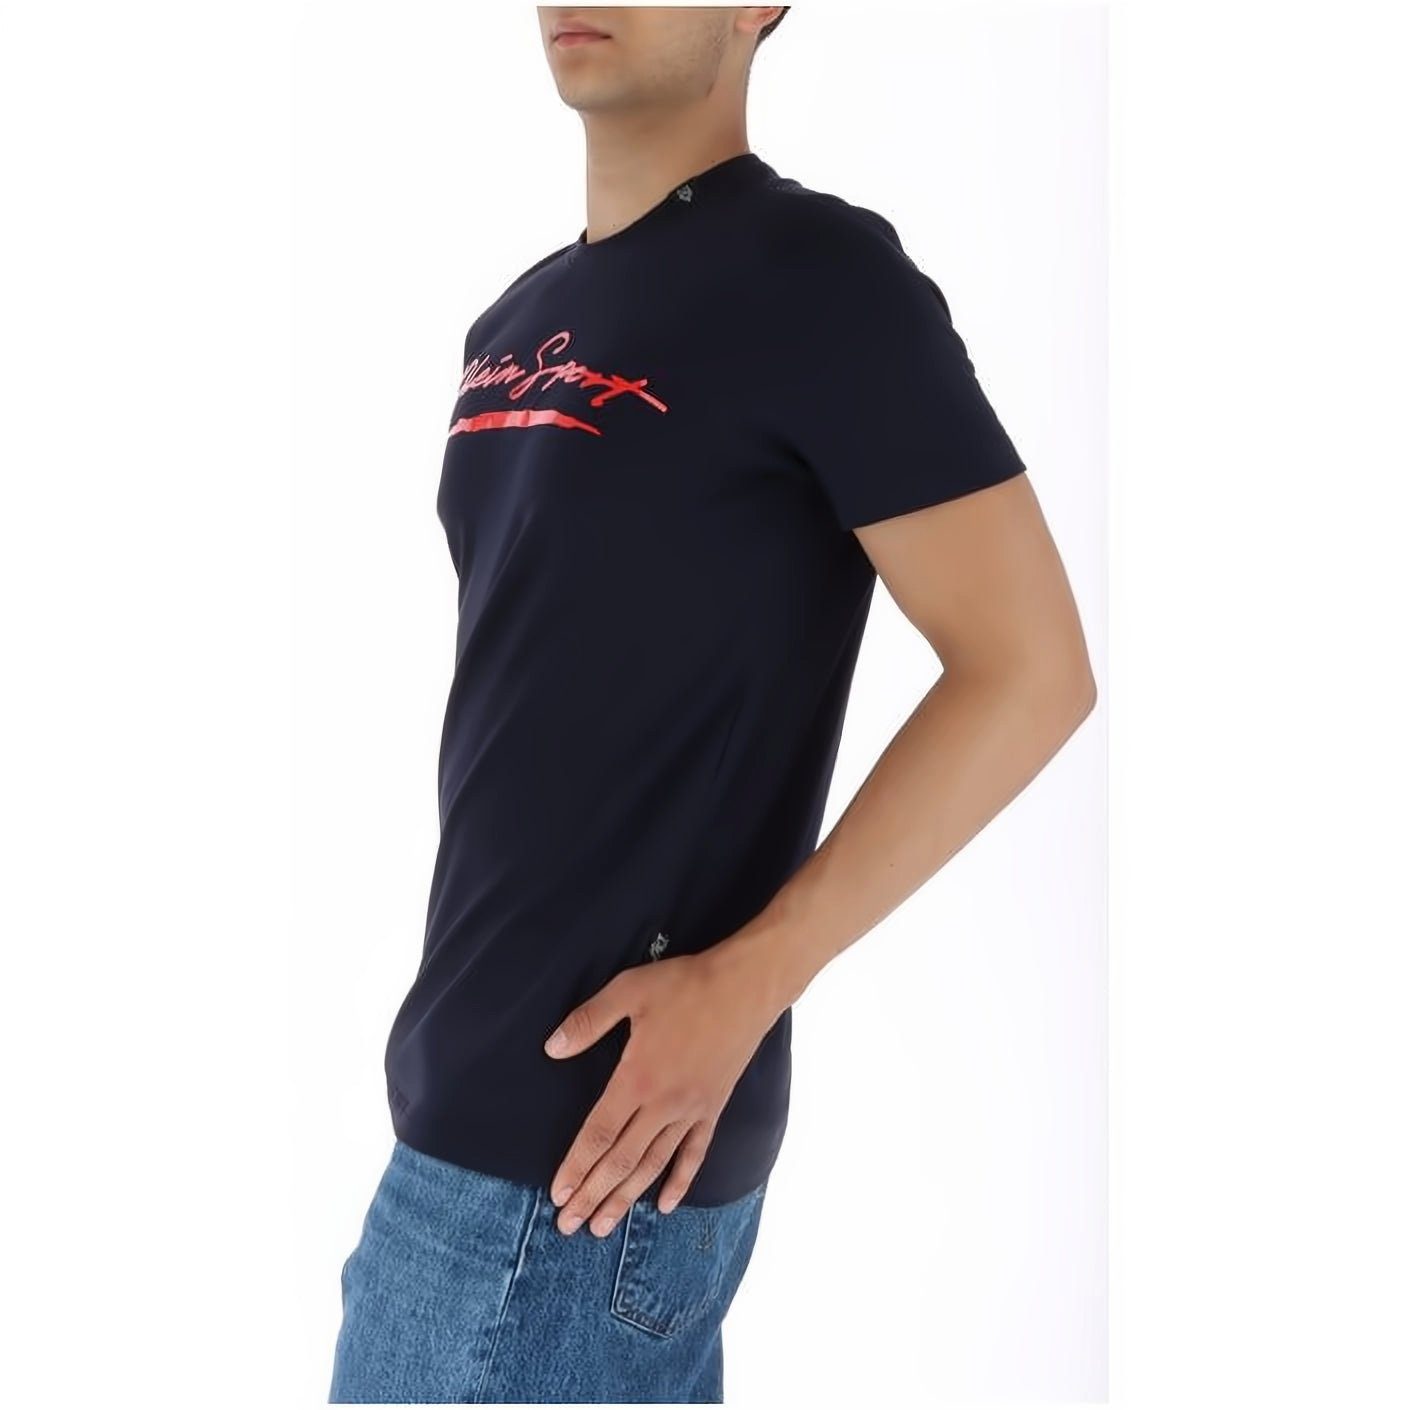 PLEIN SPORT T-Shirt ROUND NECK Look, vielfältige Tragekomfort, Stylischer Farbauswahl hoher